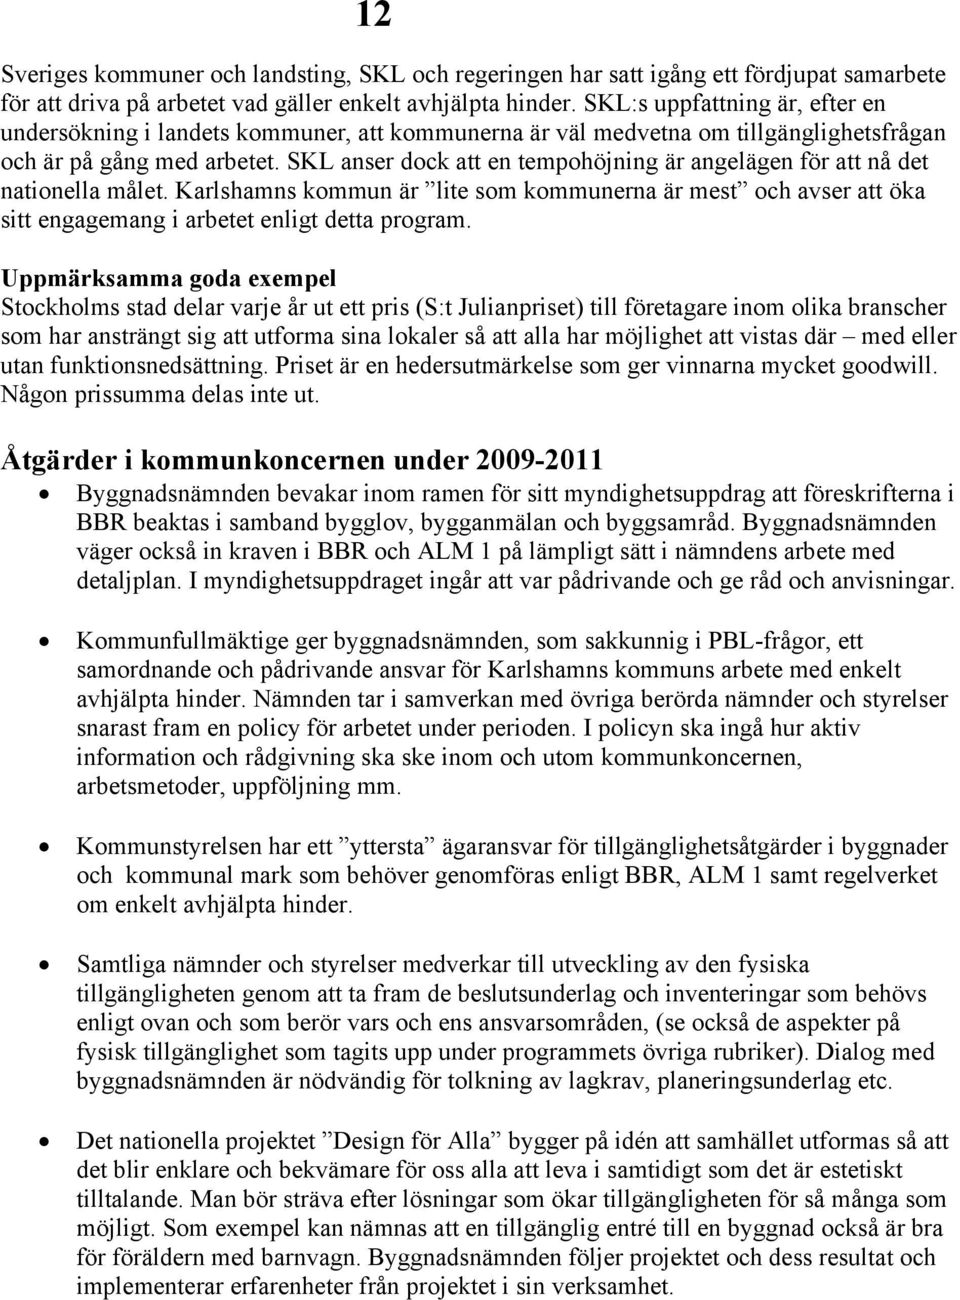 SKL anser dock att en tempohöjning är angelägen för att nå det nationella målet. Karlshamns kommun är lite som kommunerna är mest och avser att öka sitt engagemang i arbetet enligt detta program.